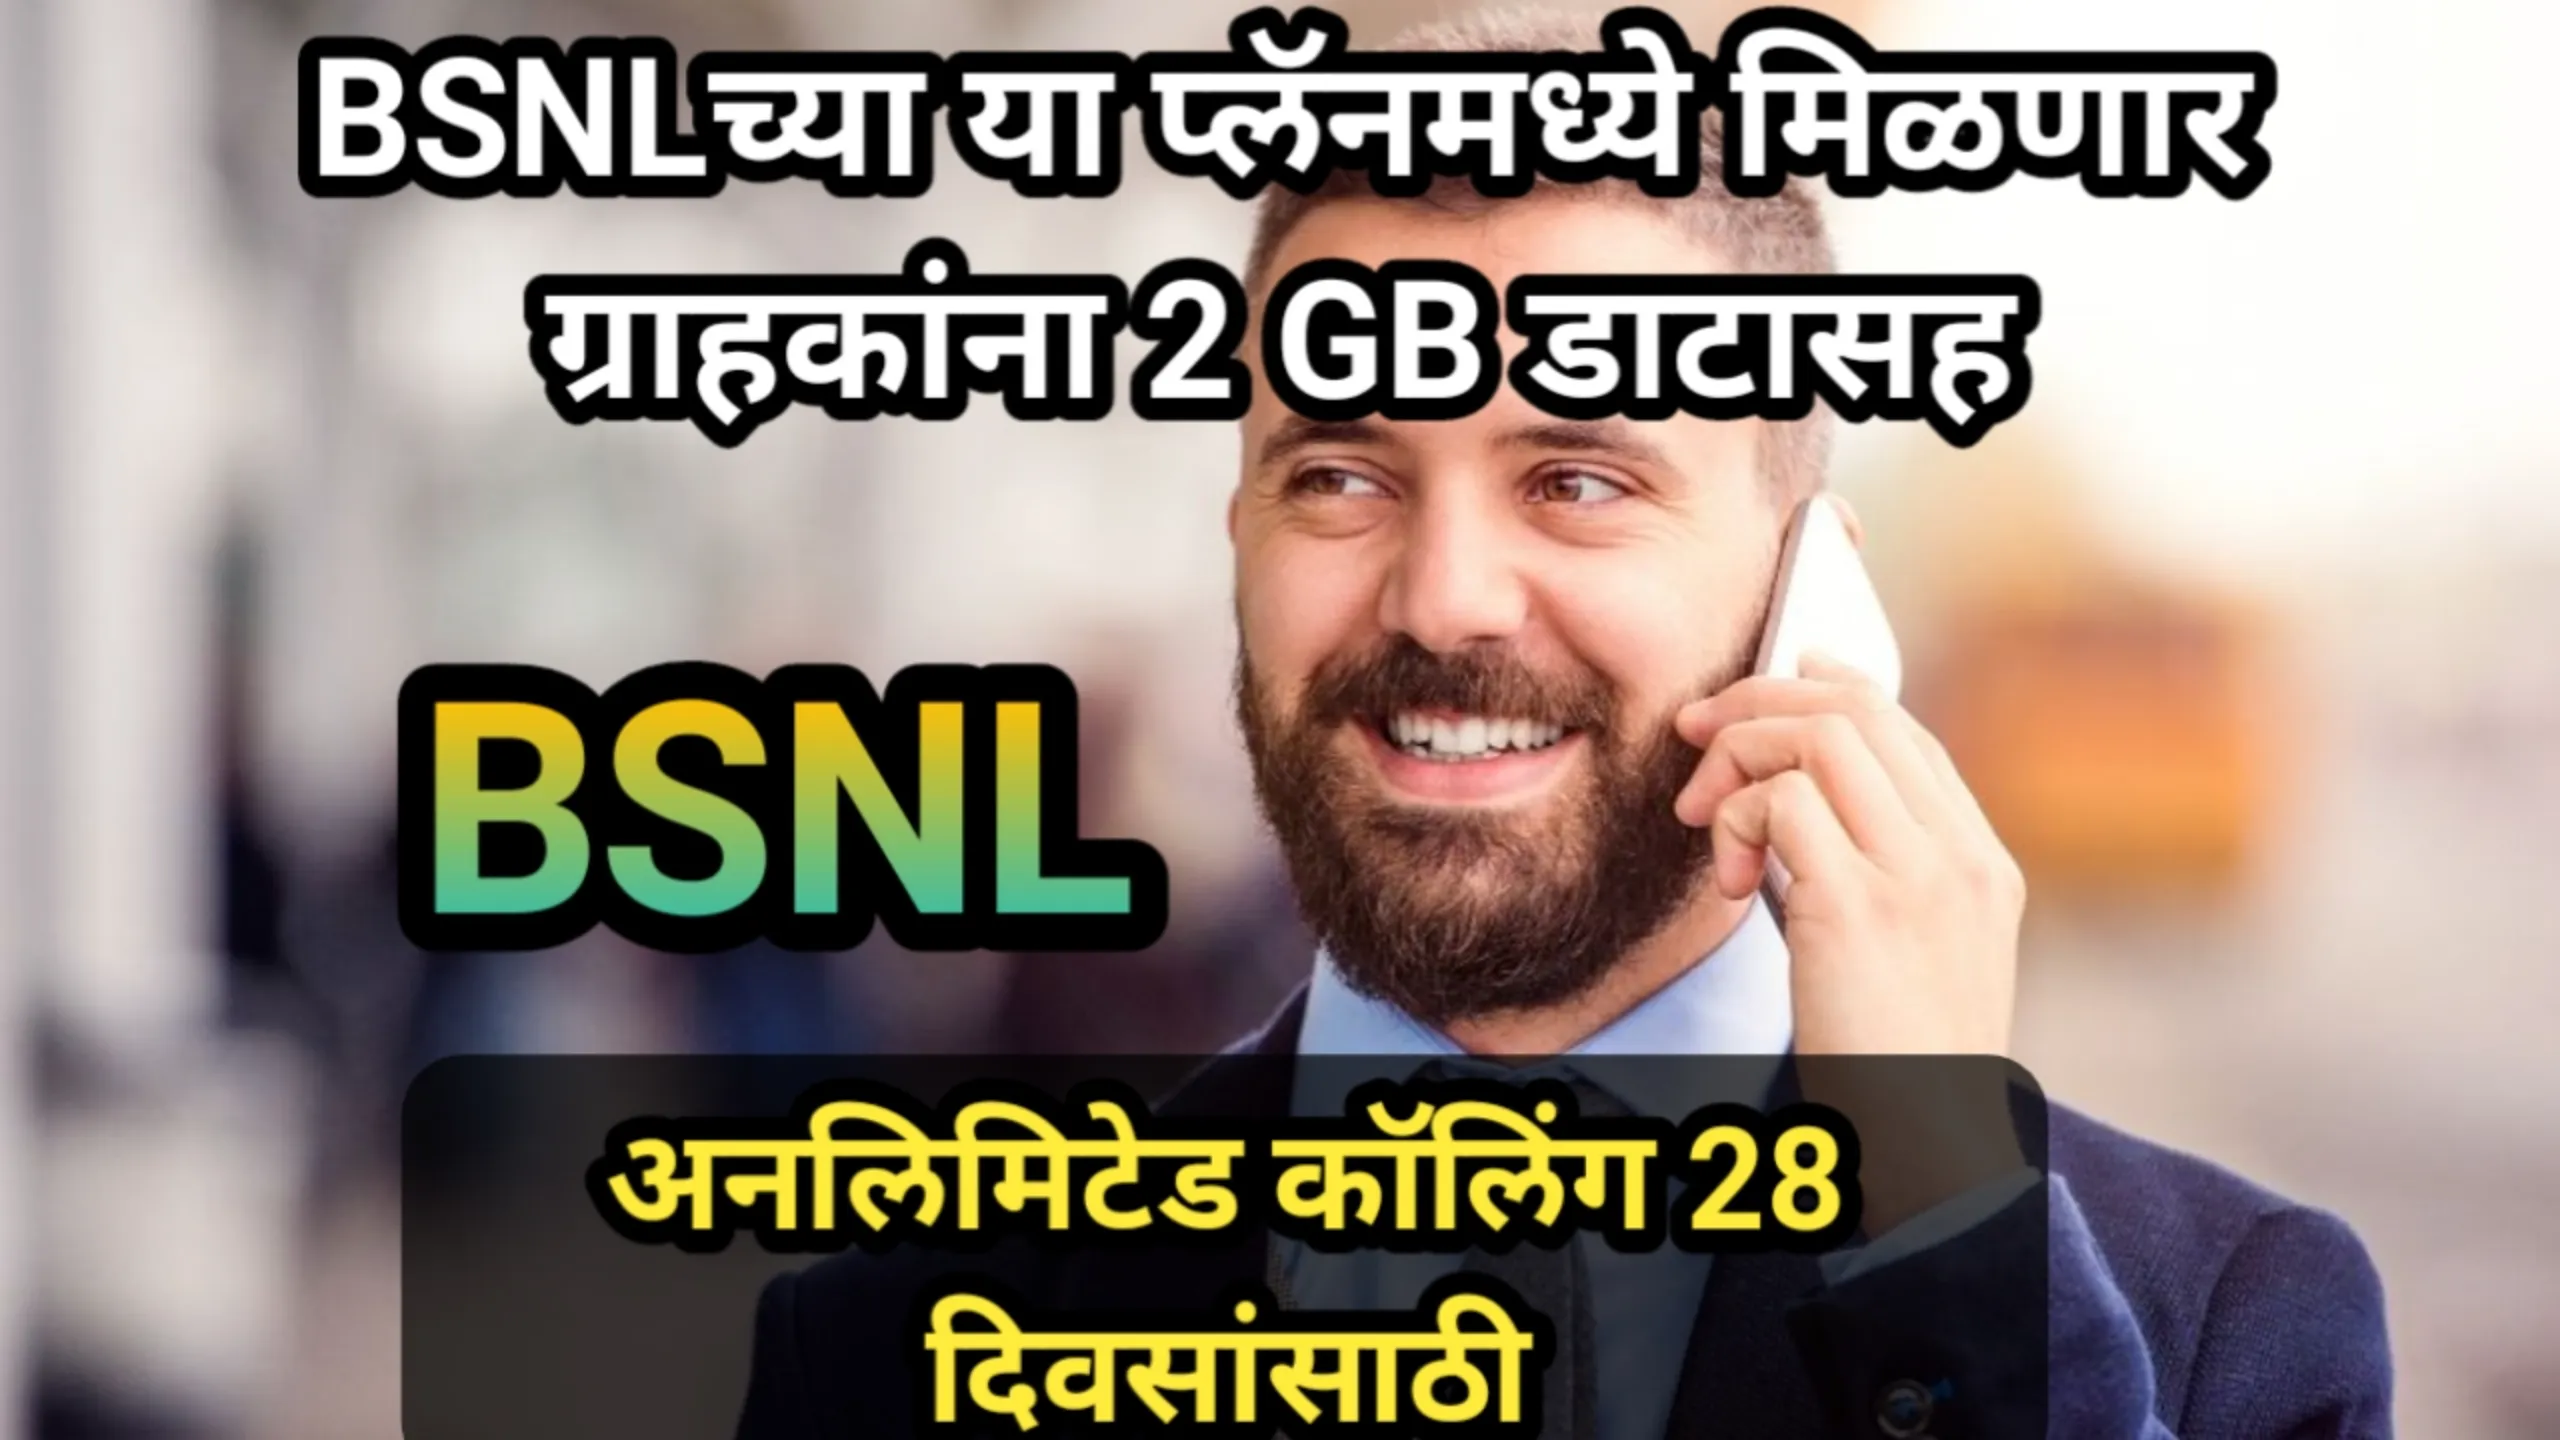 BSNLच्या या प्लॅनमध्ये मिळणार ग्राहकांना 2 GB डाटासह अनलिमिटेड कॉलिंग 28 दिवसांसाठी | BSNL Plan 